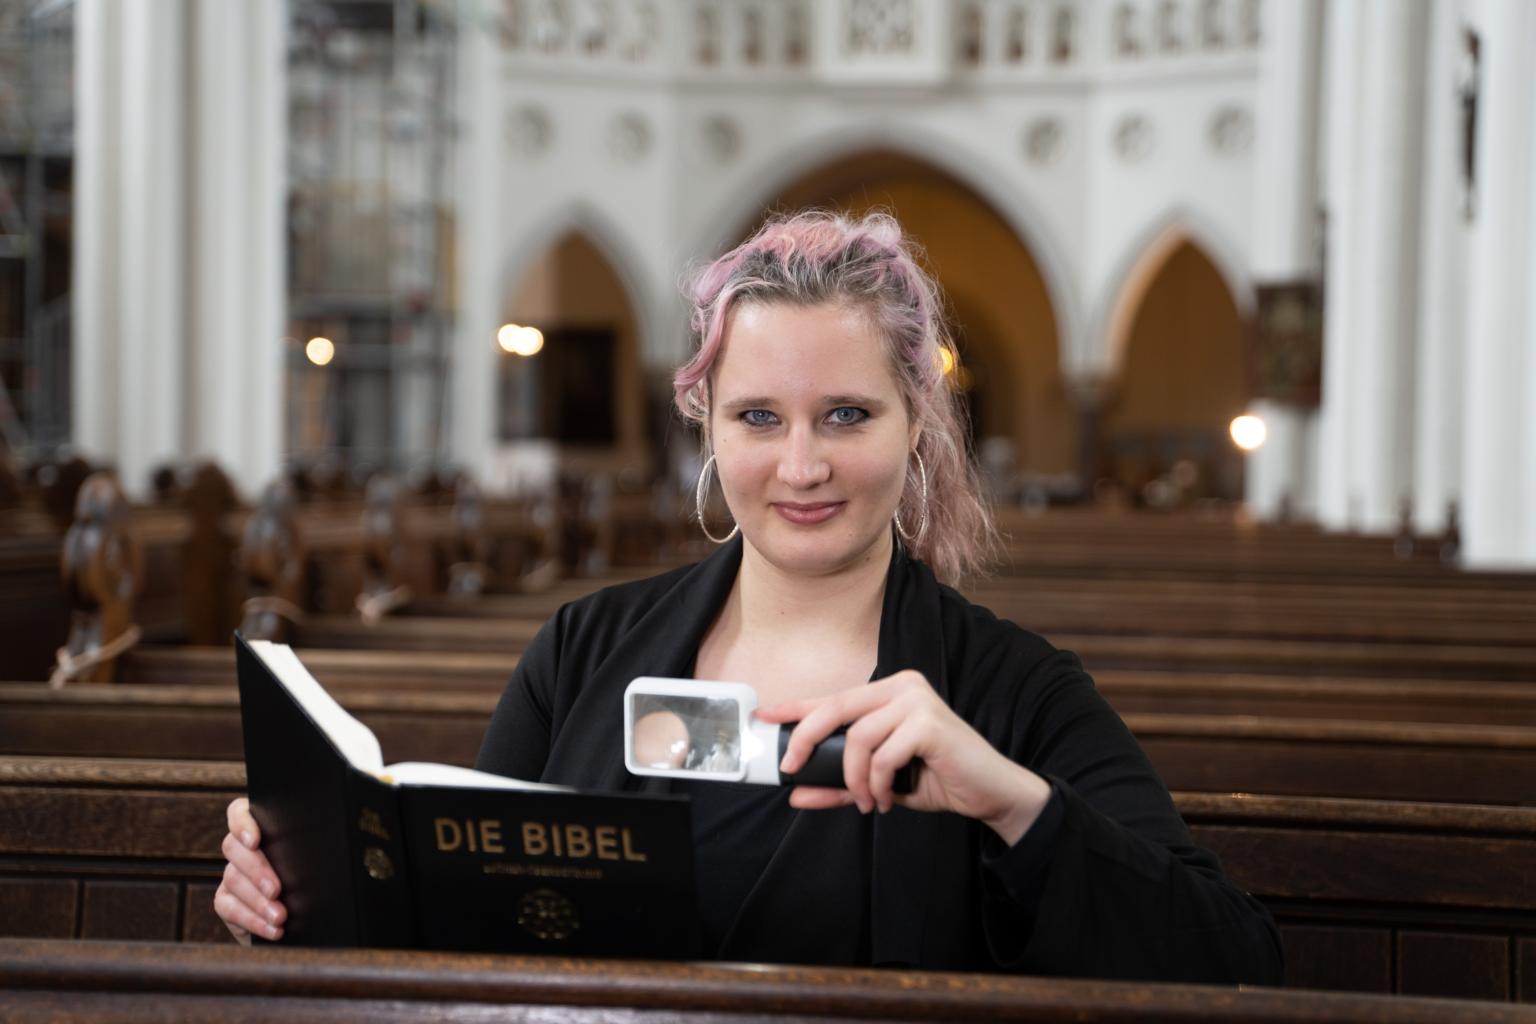 Foto: Eine Frau Mitte 20 sitzt in einer Kirchenbank und lächelt in die Kamera, in einer Hand eine Leuchtlupe, in der anderen eine Bibel. Sie hat langes, dunkelblondes Haar mit rötlichen Strähnchen und trägt große Ohrringe. (c) DBSV-Friese